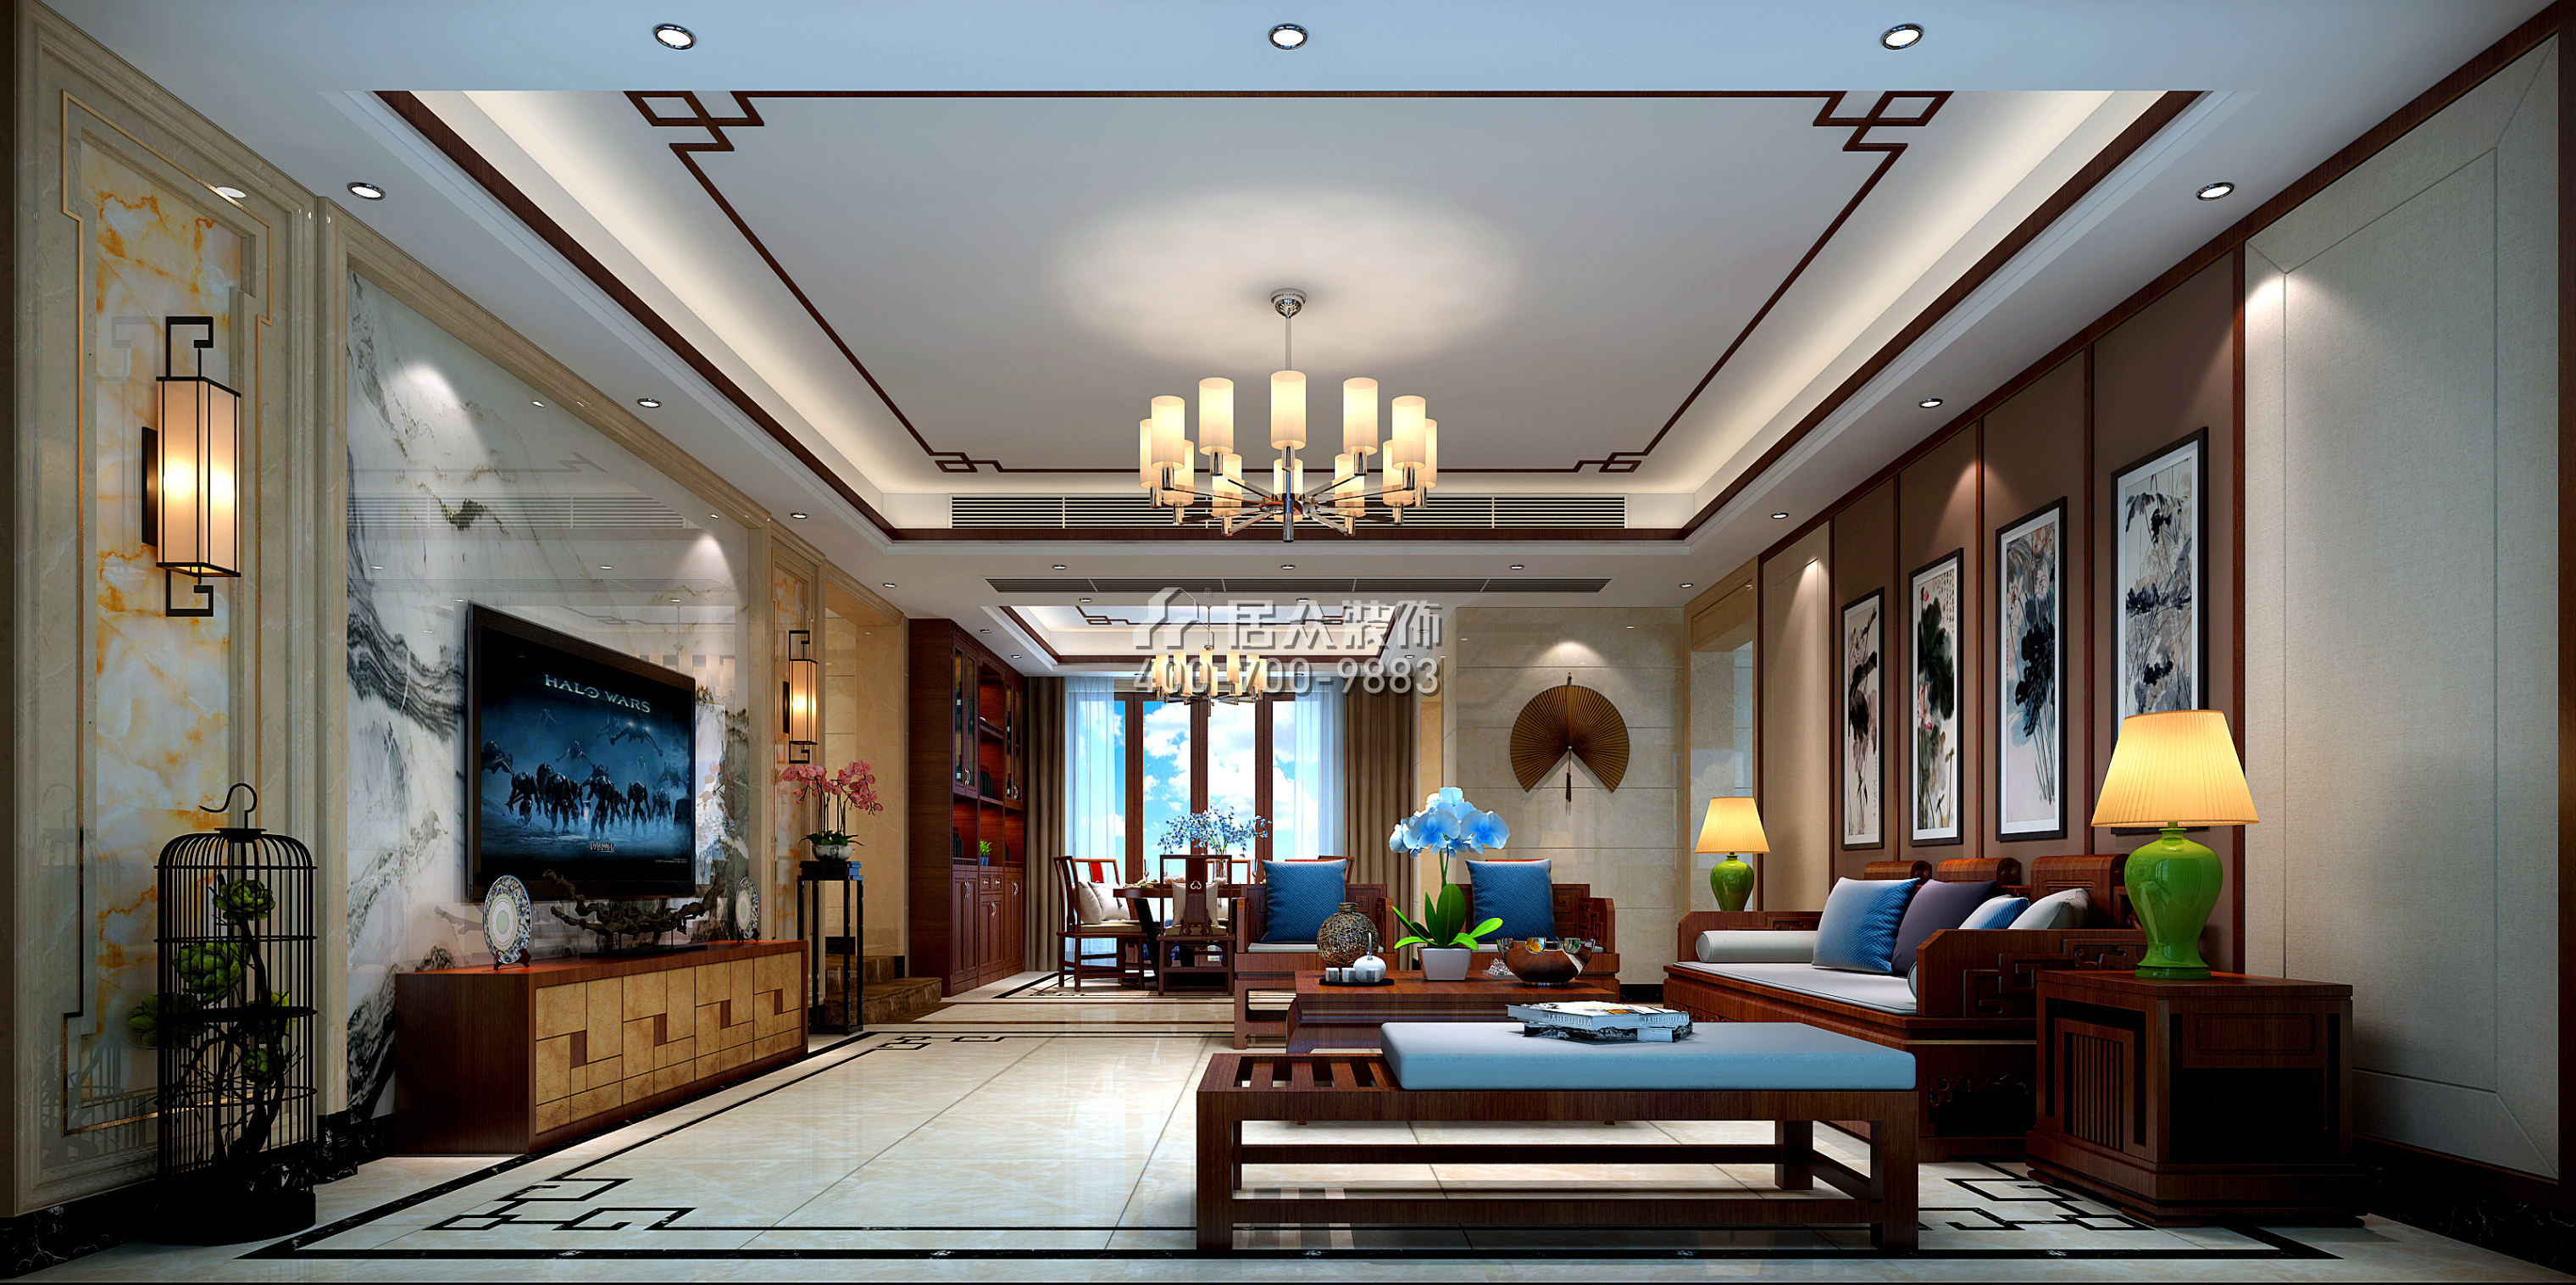 皓翔壹城中心240平方米中式风格平层户型客厅装修效果图